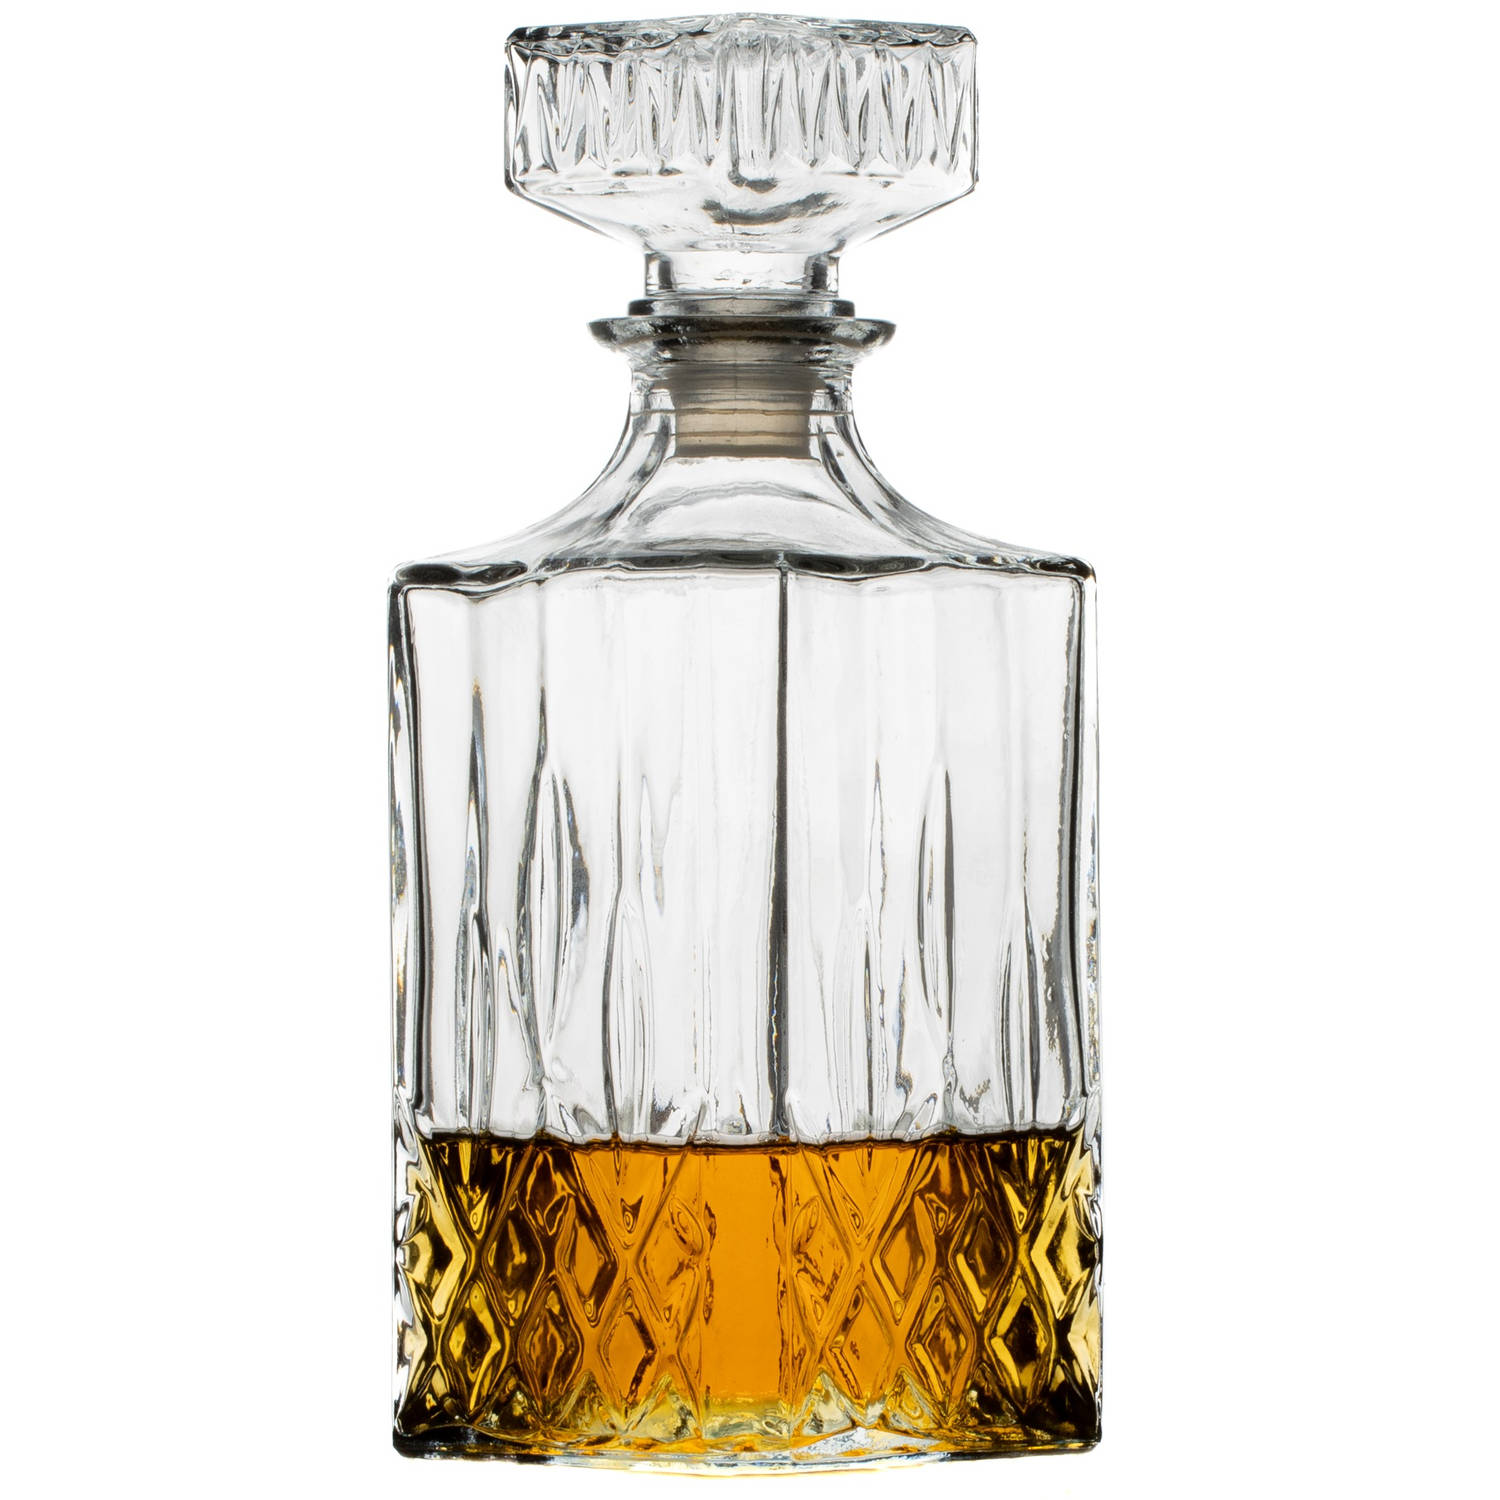 Interactie inch bedreiging Sareva Whisky Karaf 1 Liter | Blokker